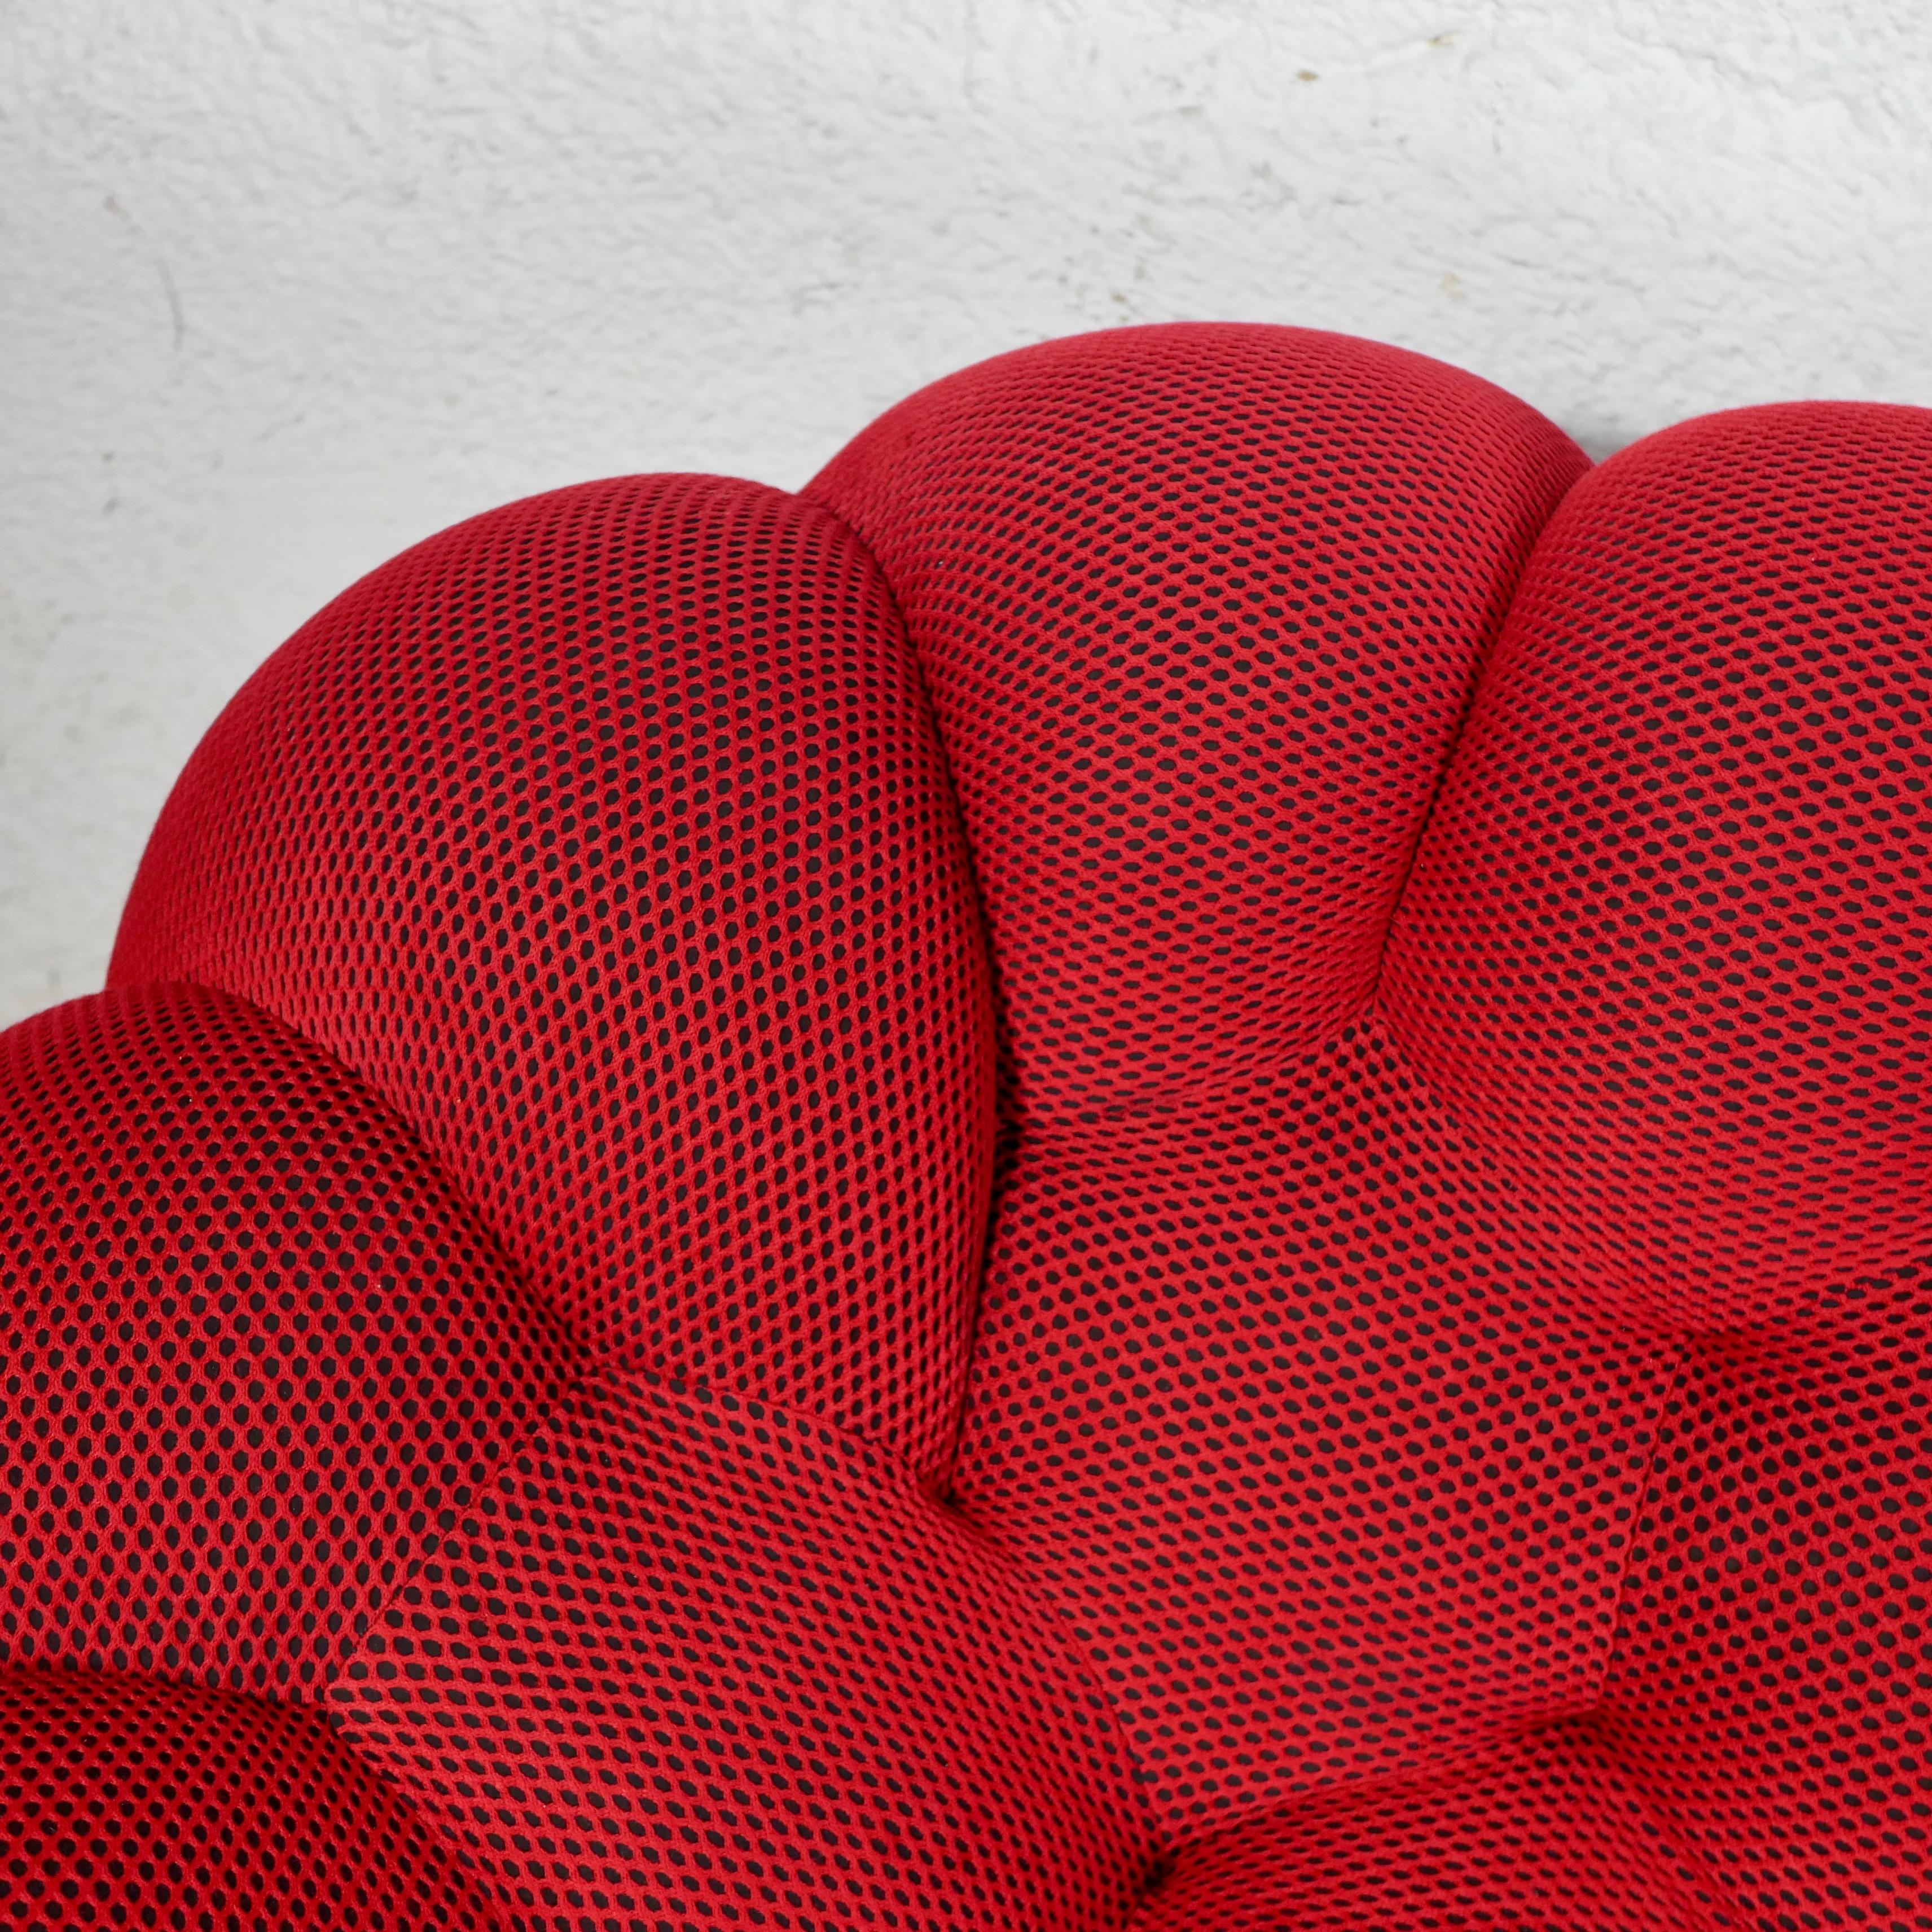 Bubble sofa Techno 3D fabric by Sacha Lakic for Roche Bobois, 2014 1